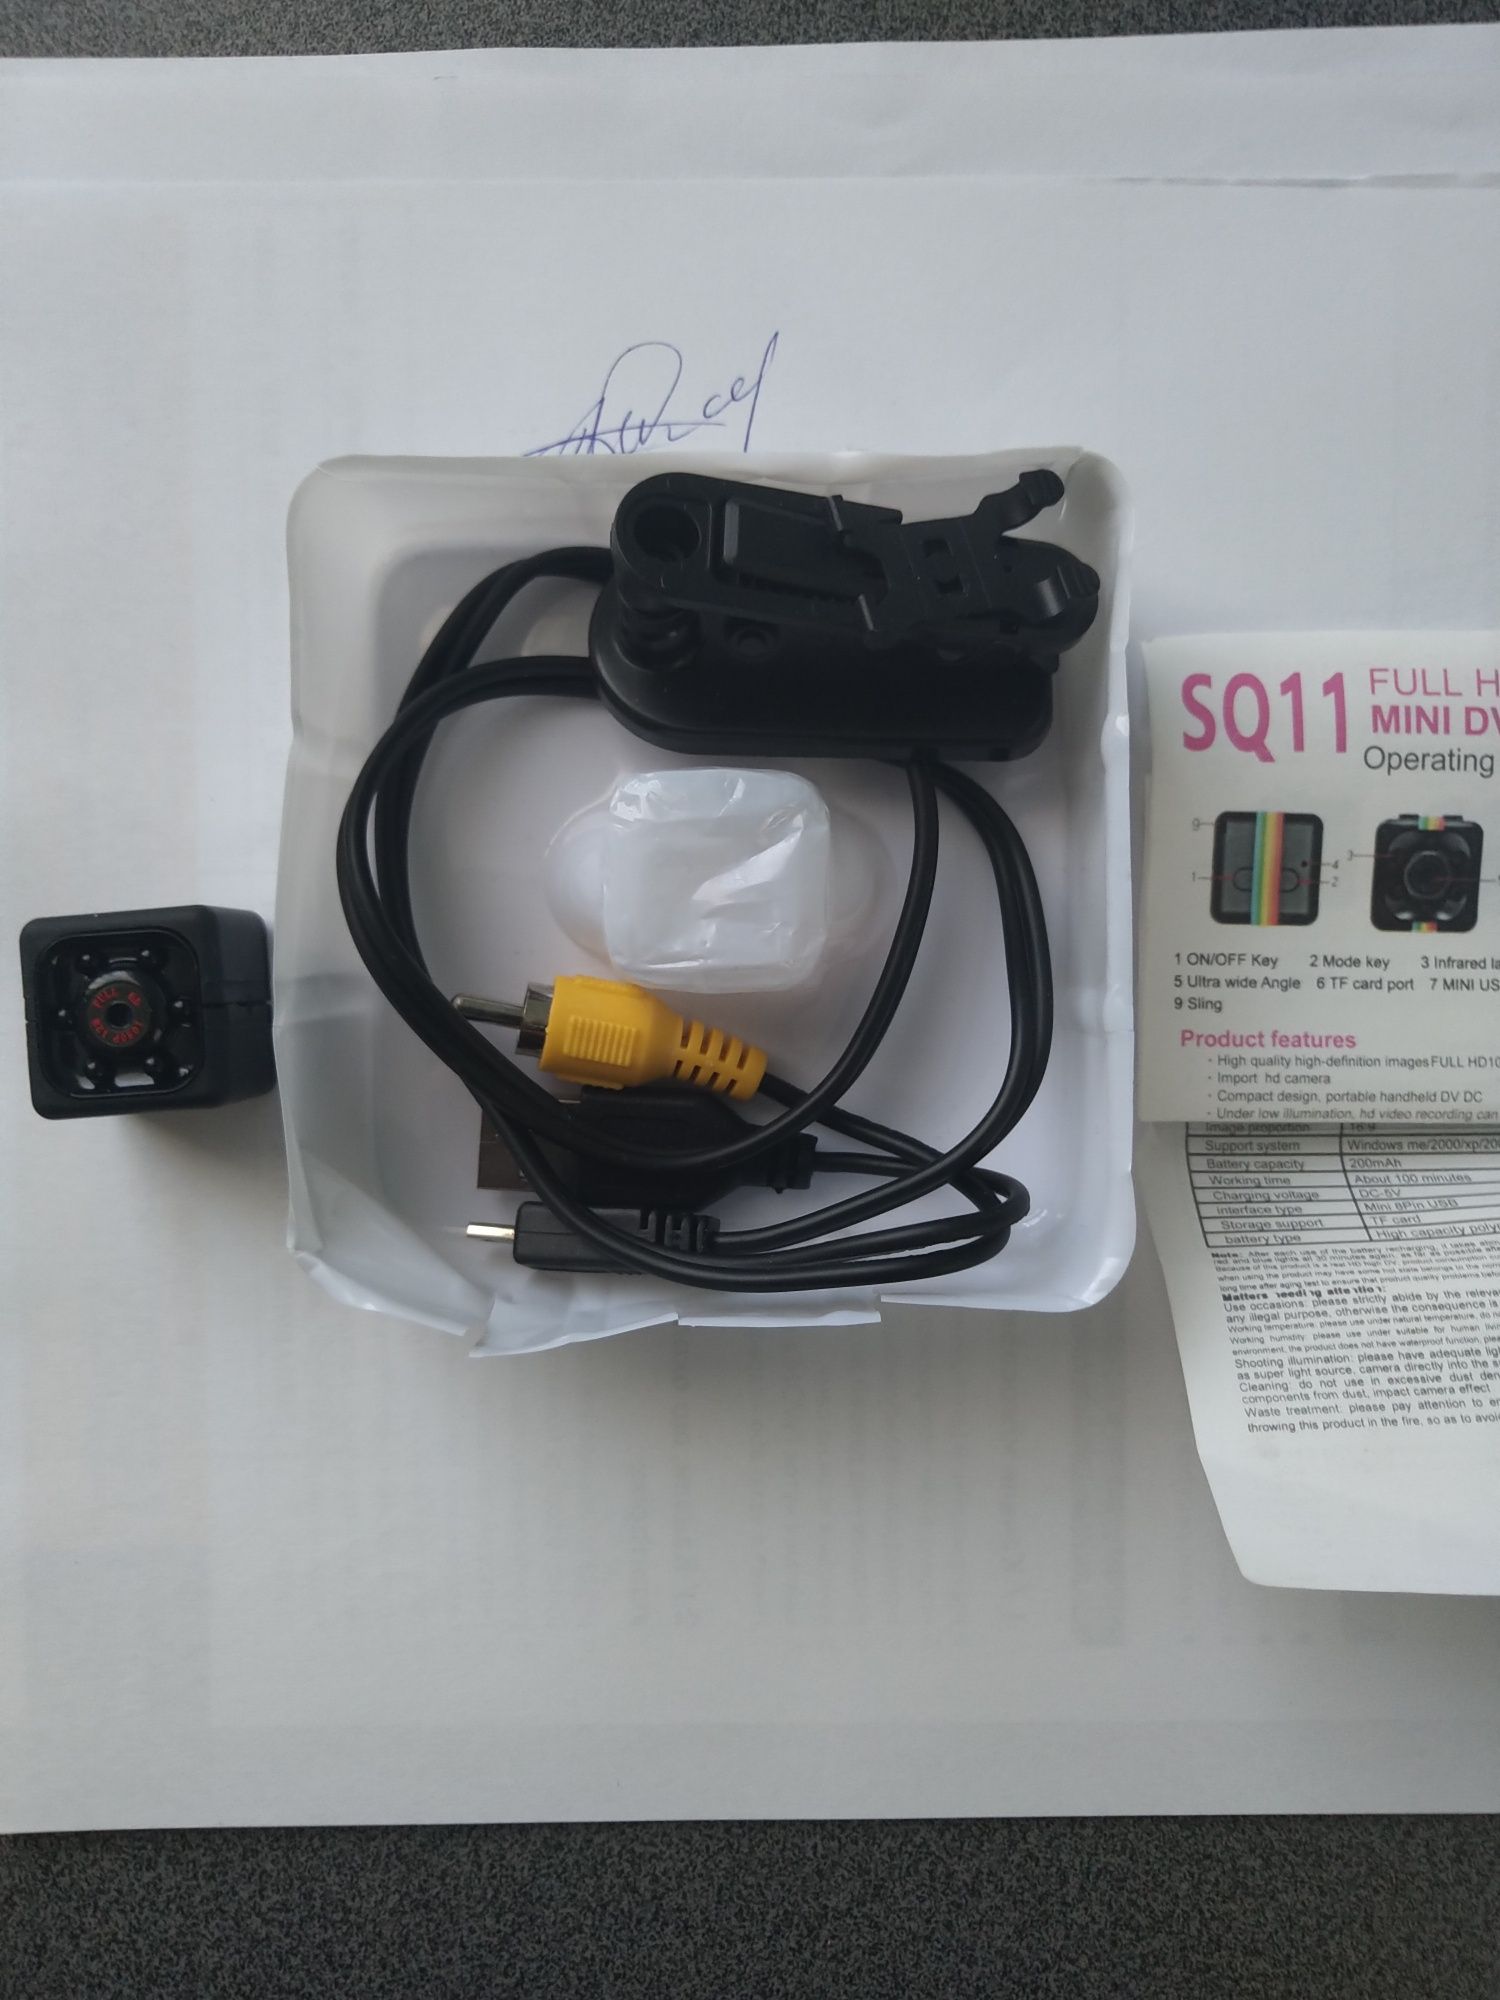 Mini DV камера SQ-11